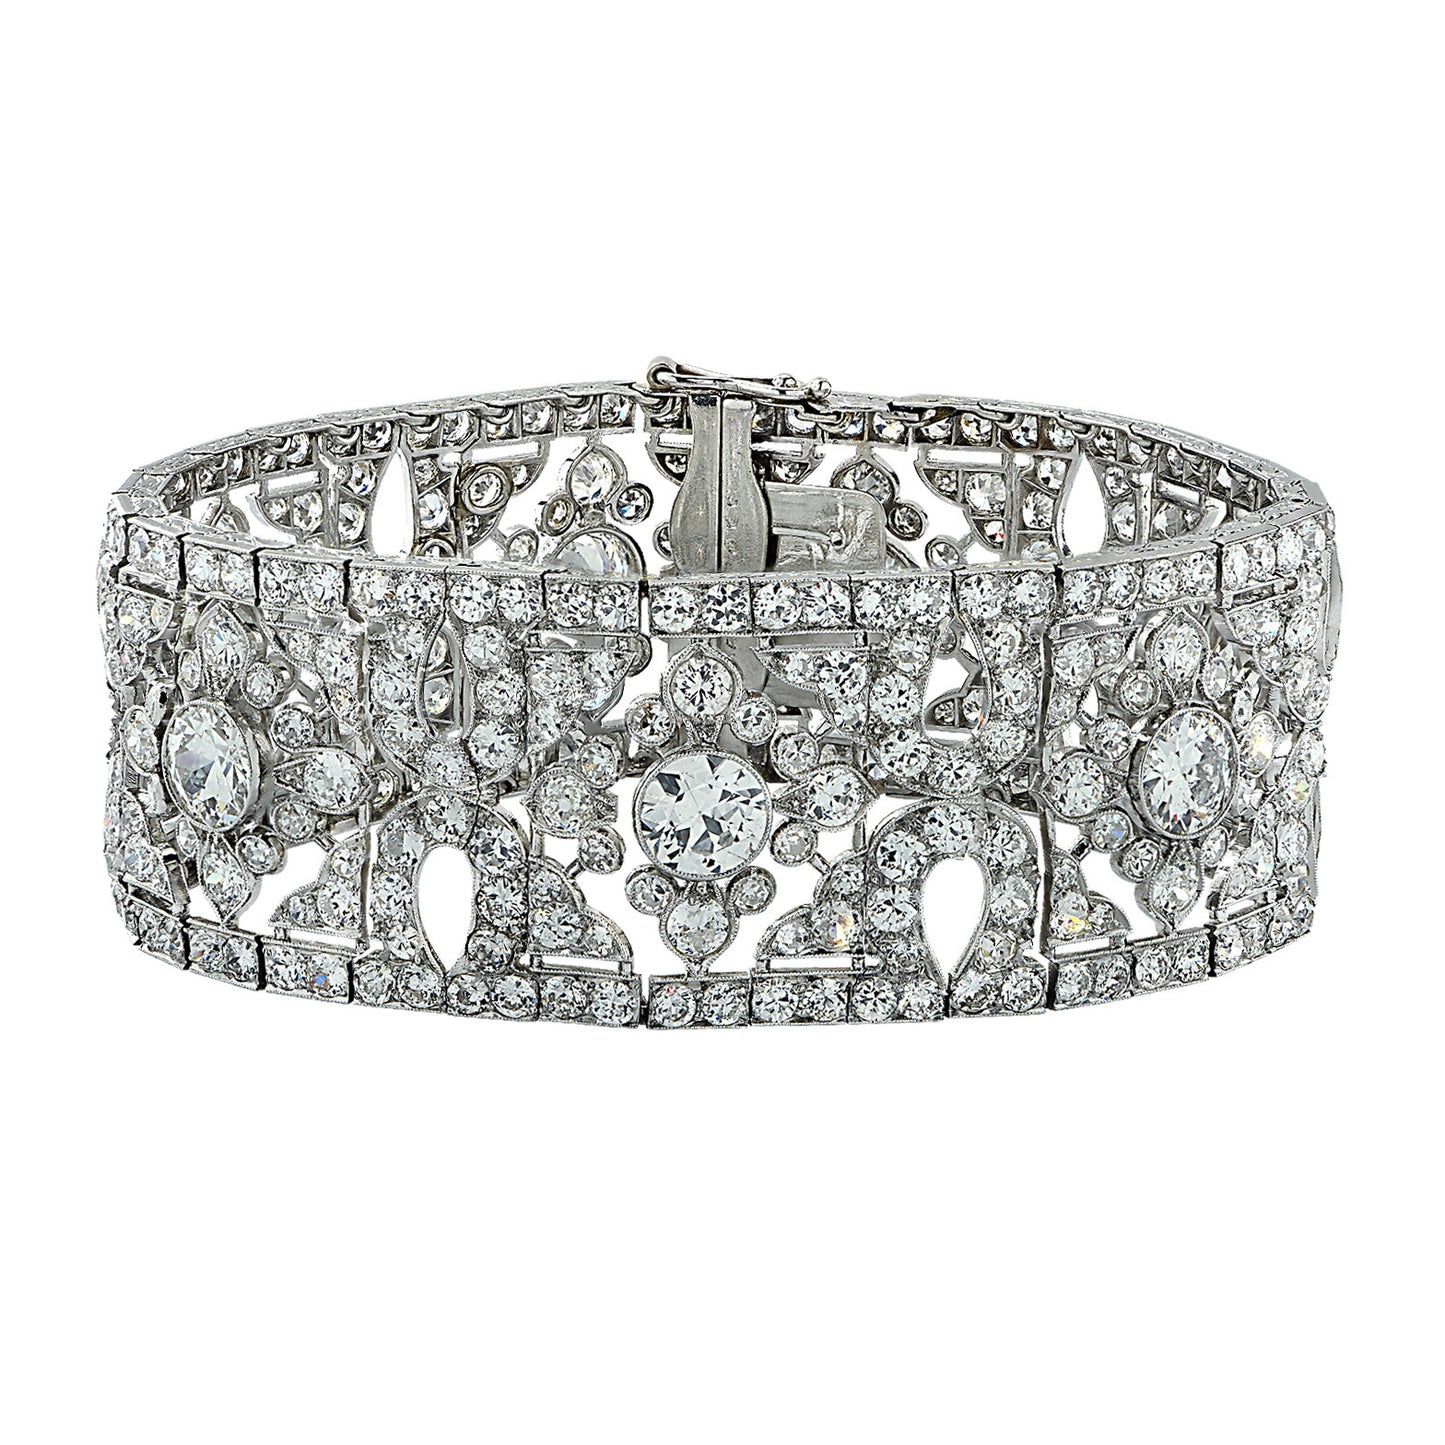 Cartier Antique Platinum Diamond Belle Epoque Bracelet front view